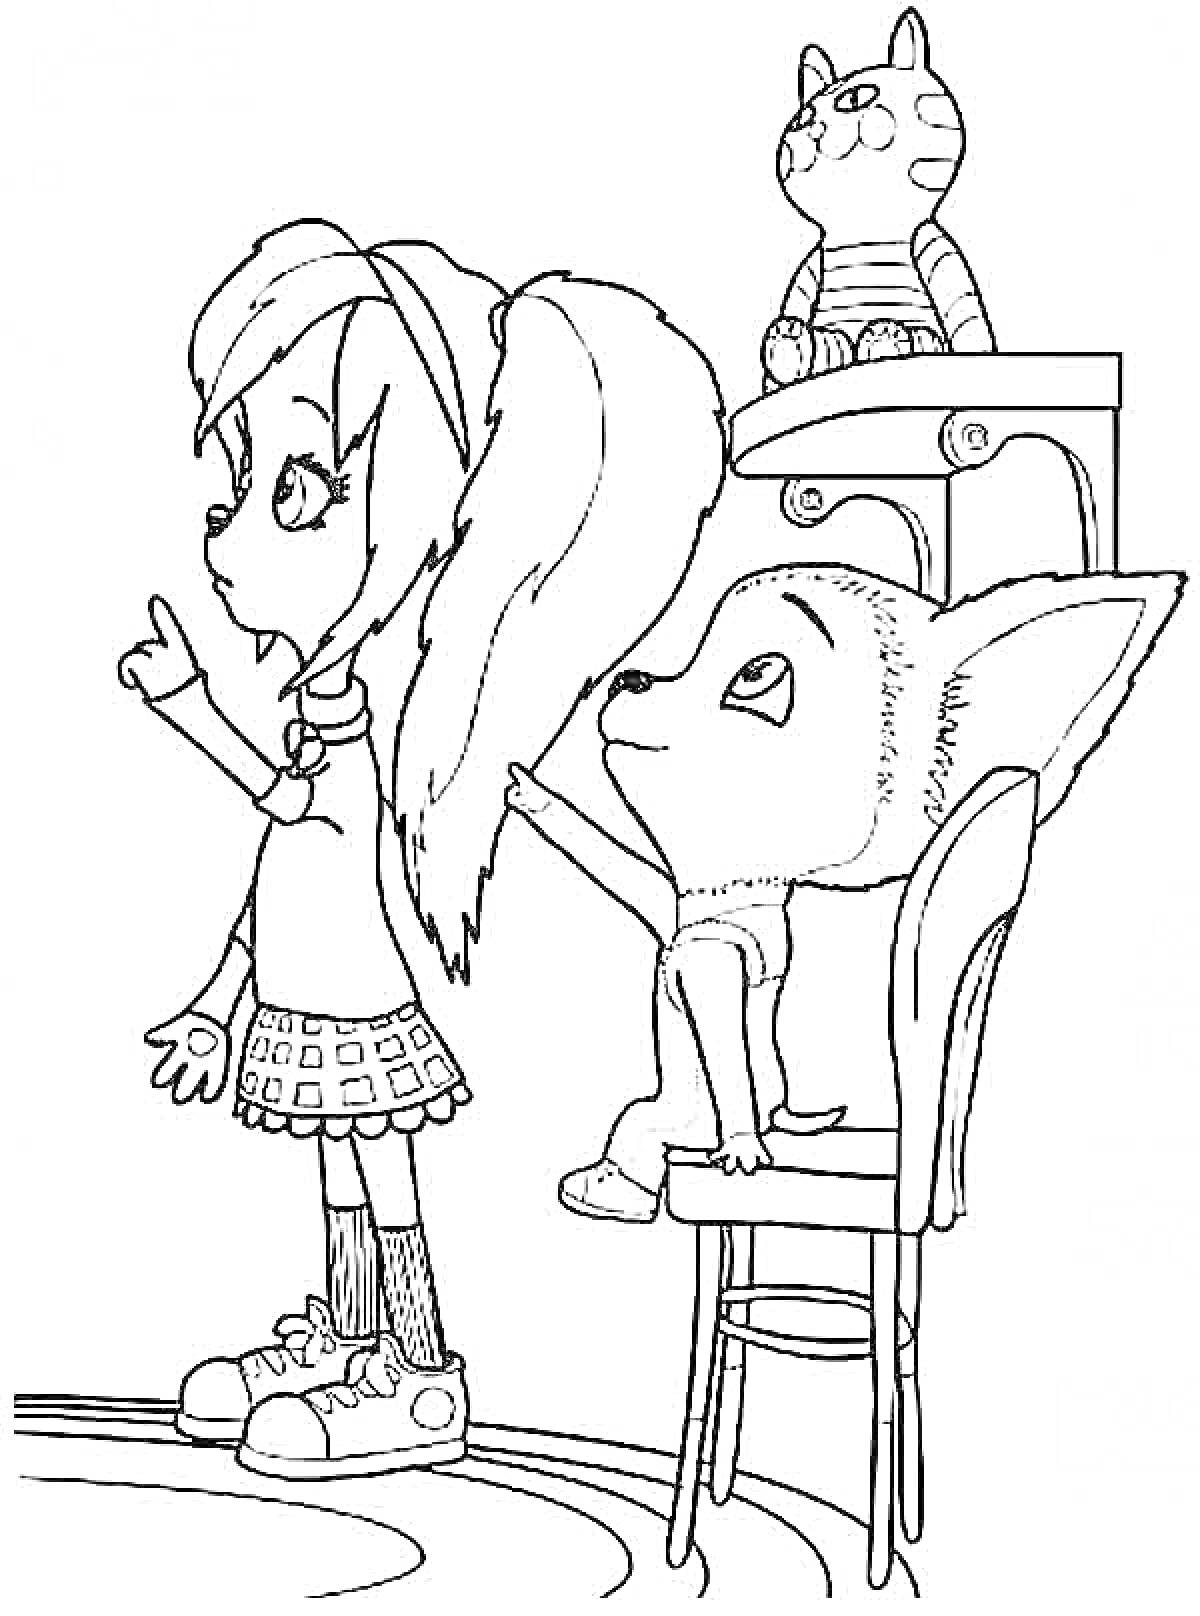 Девочка с длинными ушами, мальчик на стуле и котенок на столе